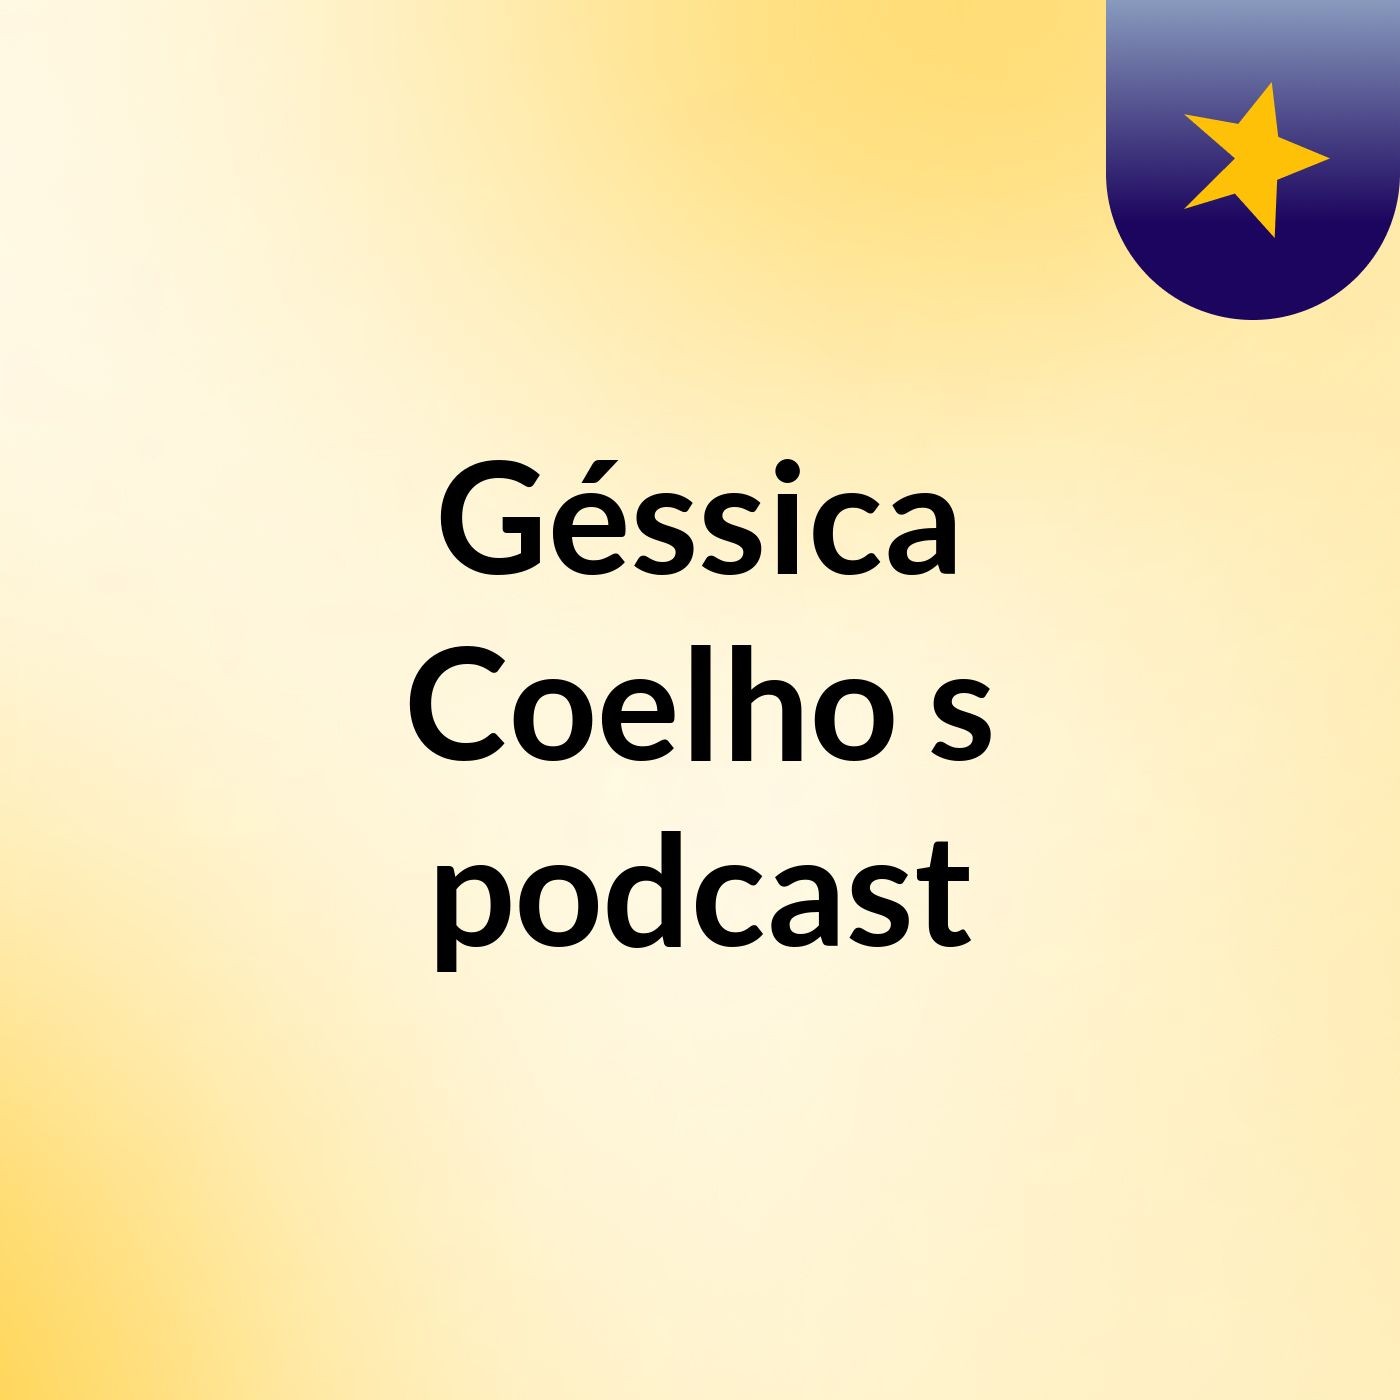 Géssica Coelho's podcast